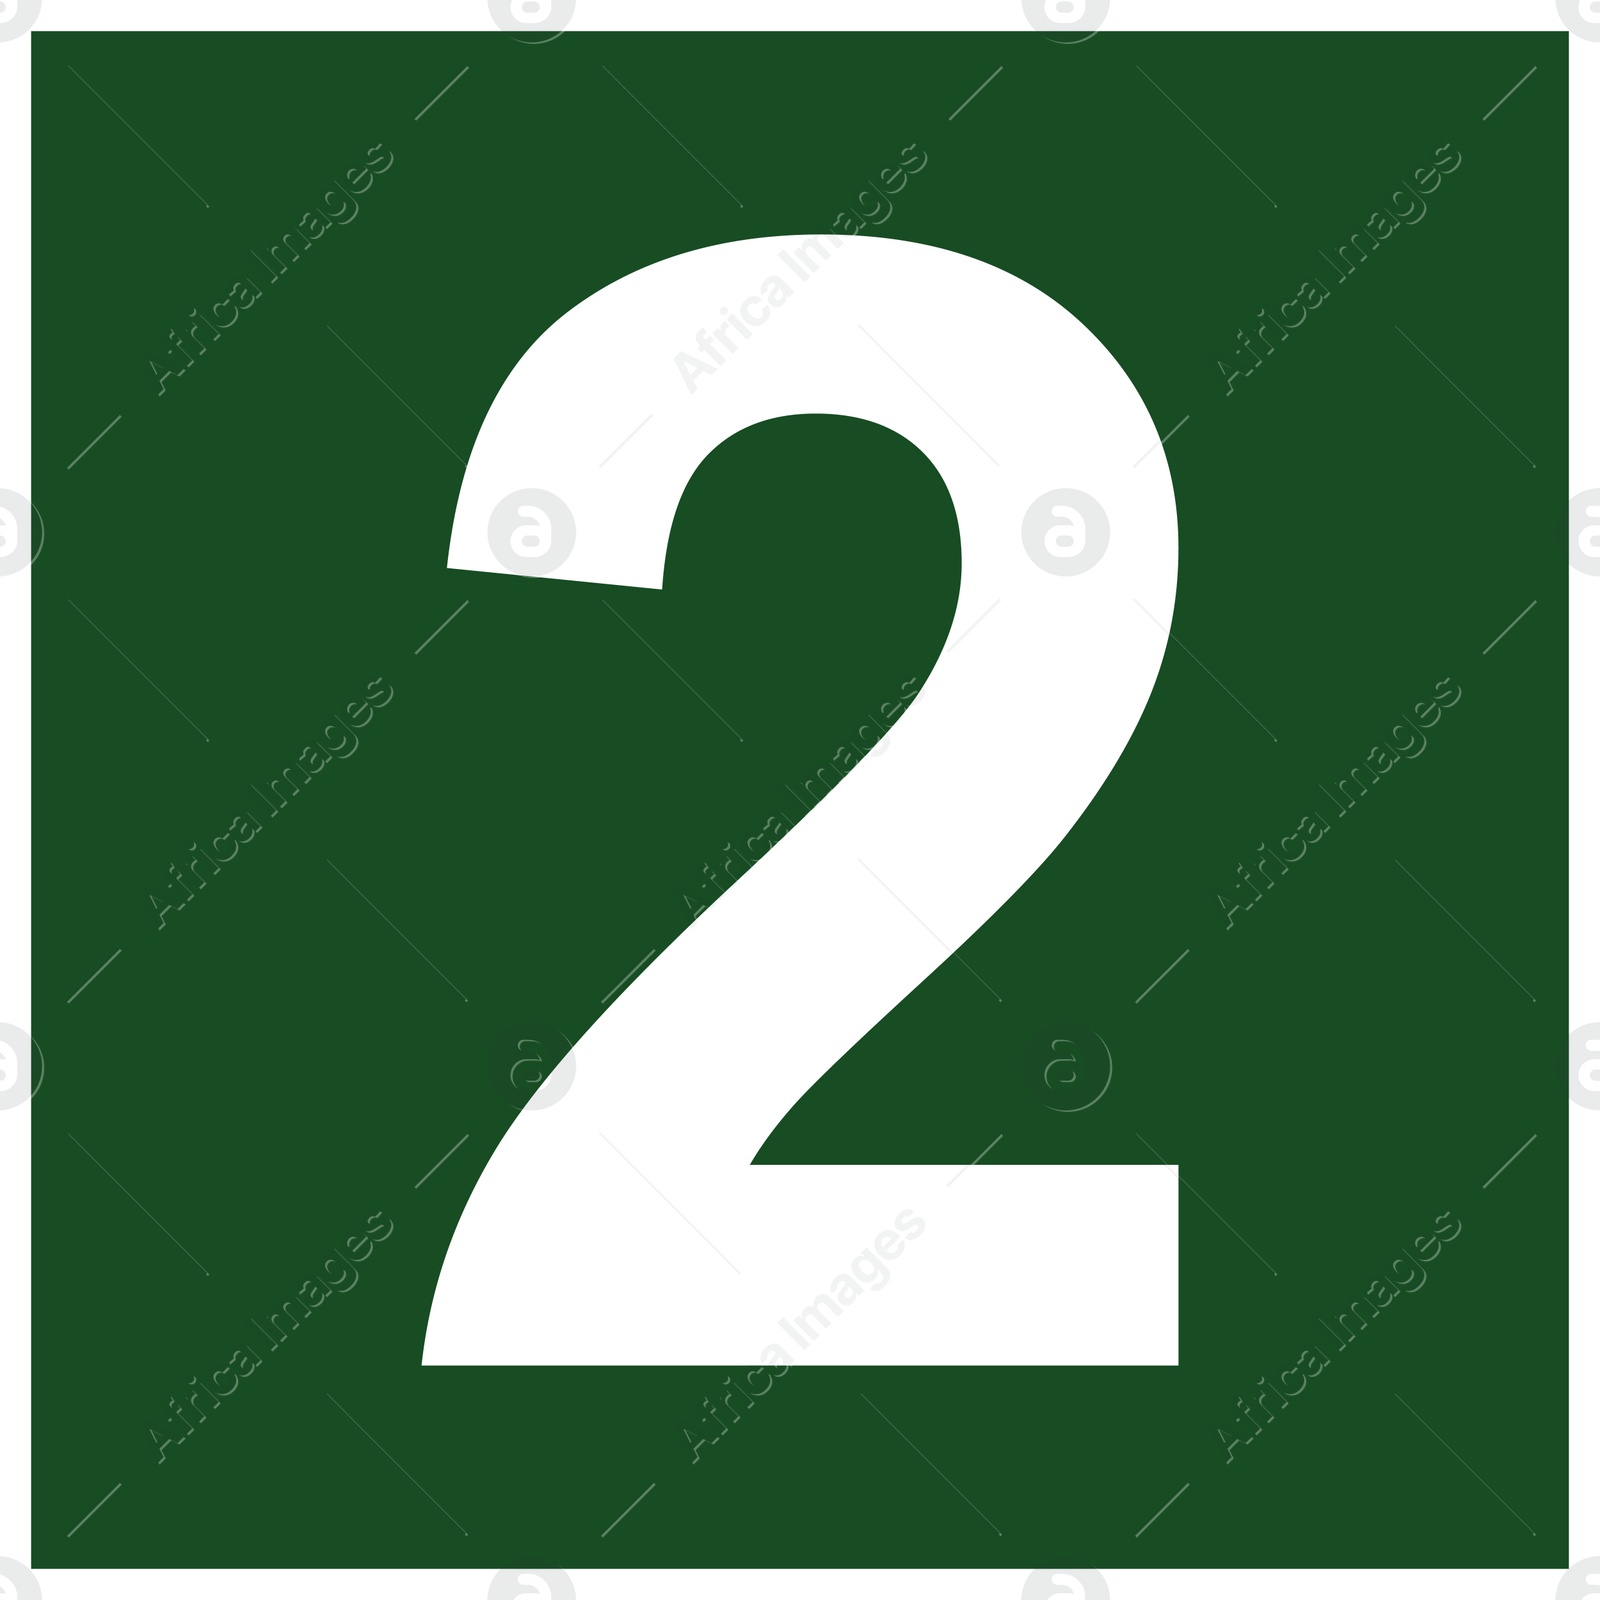 Image of International Maritime Organization (IMO) sign, illustration. Number "2"